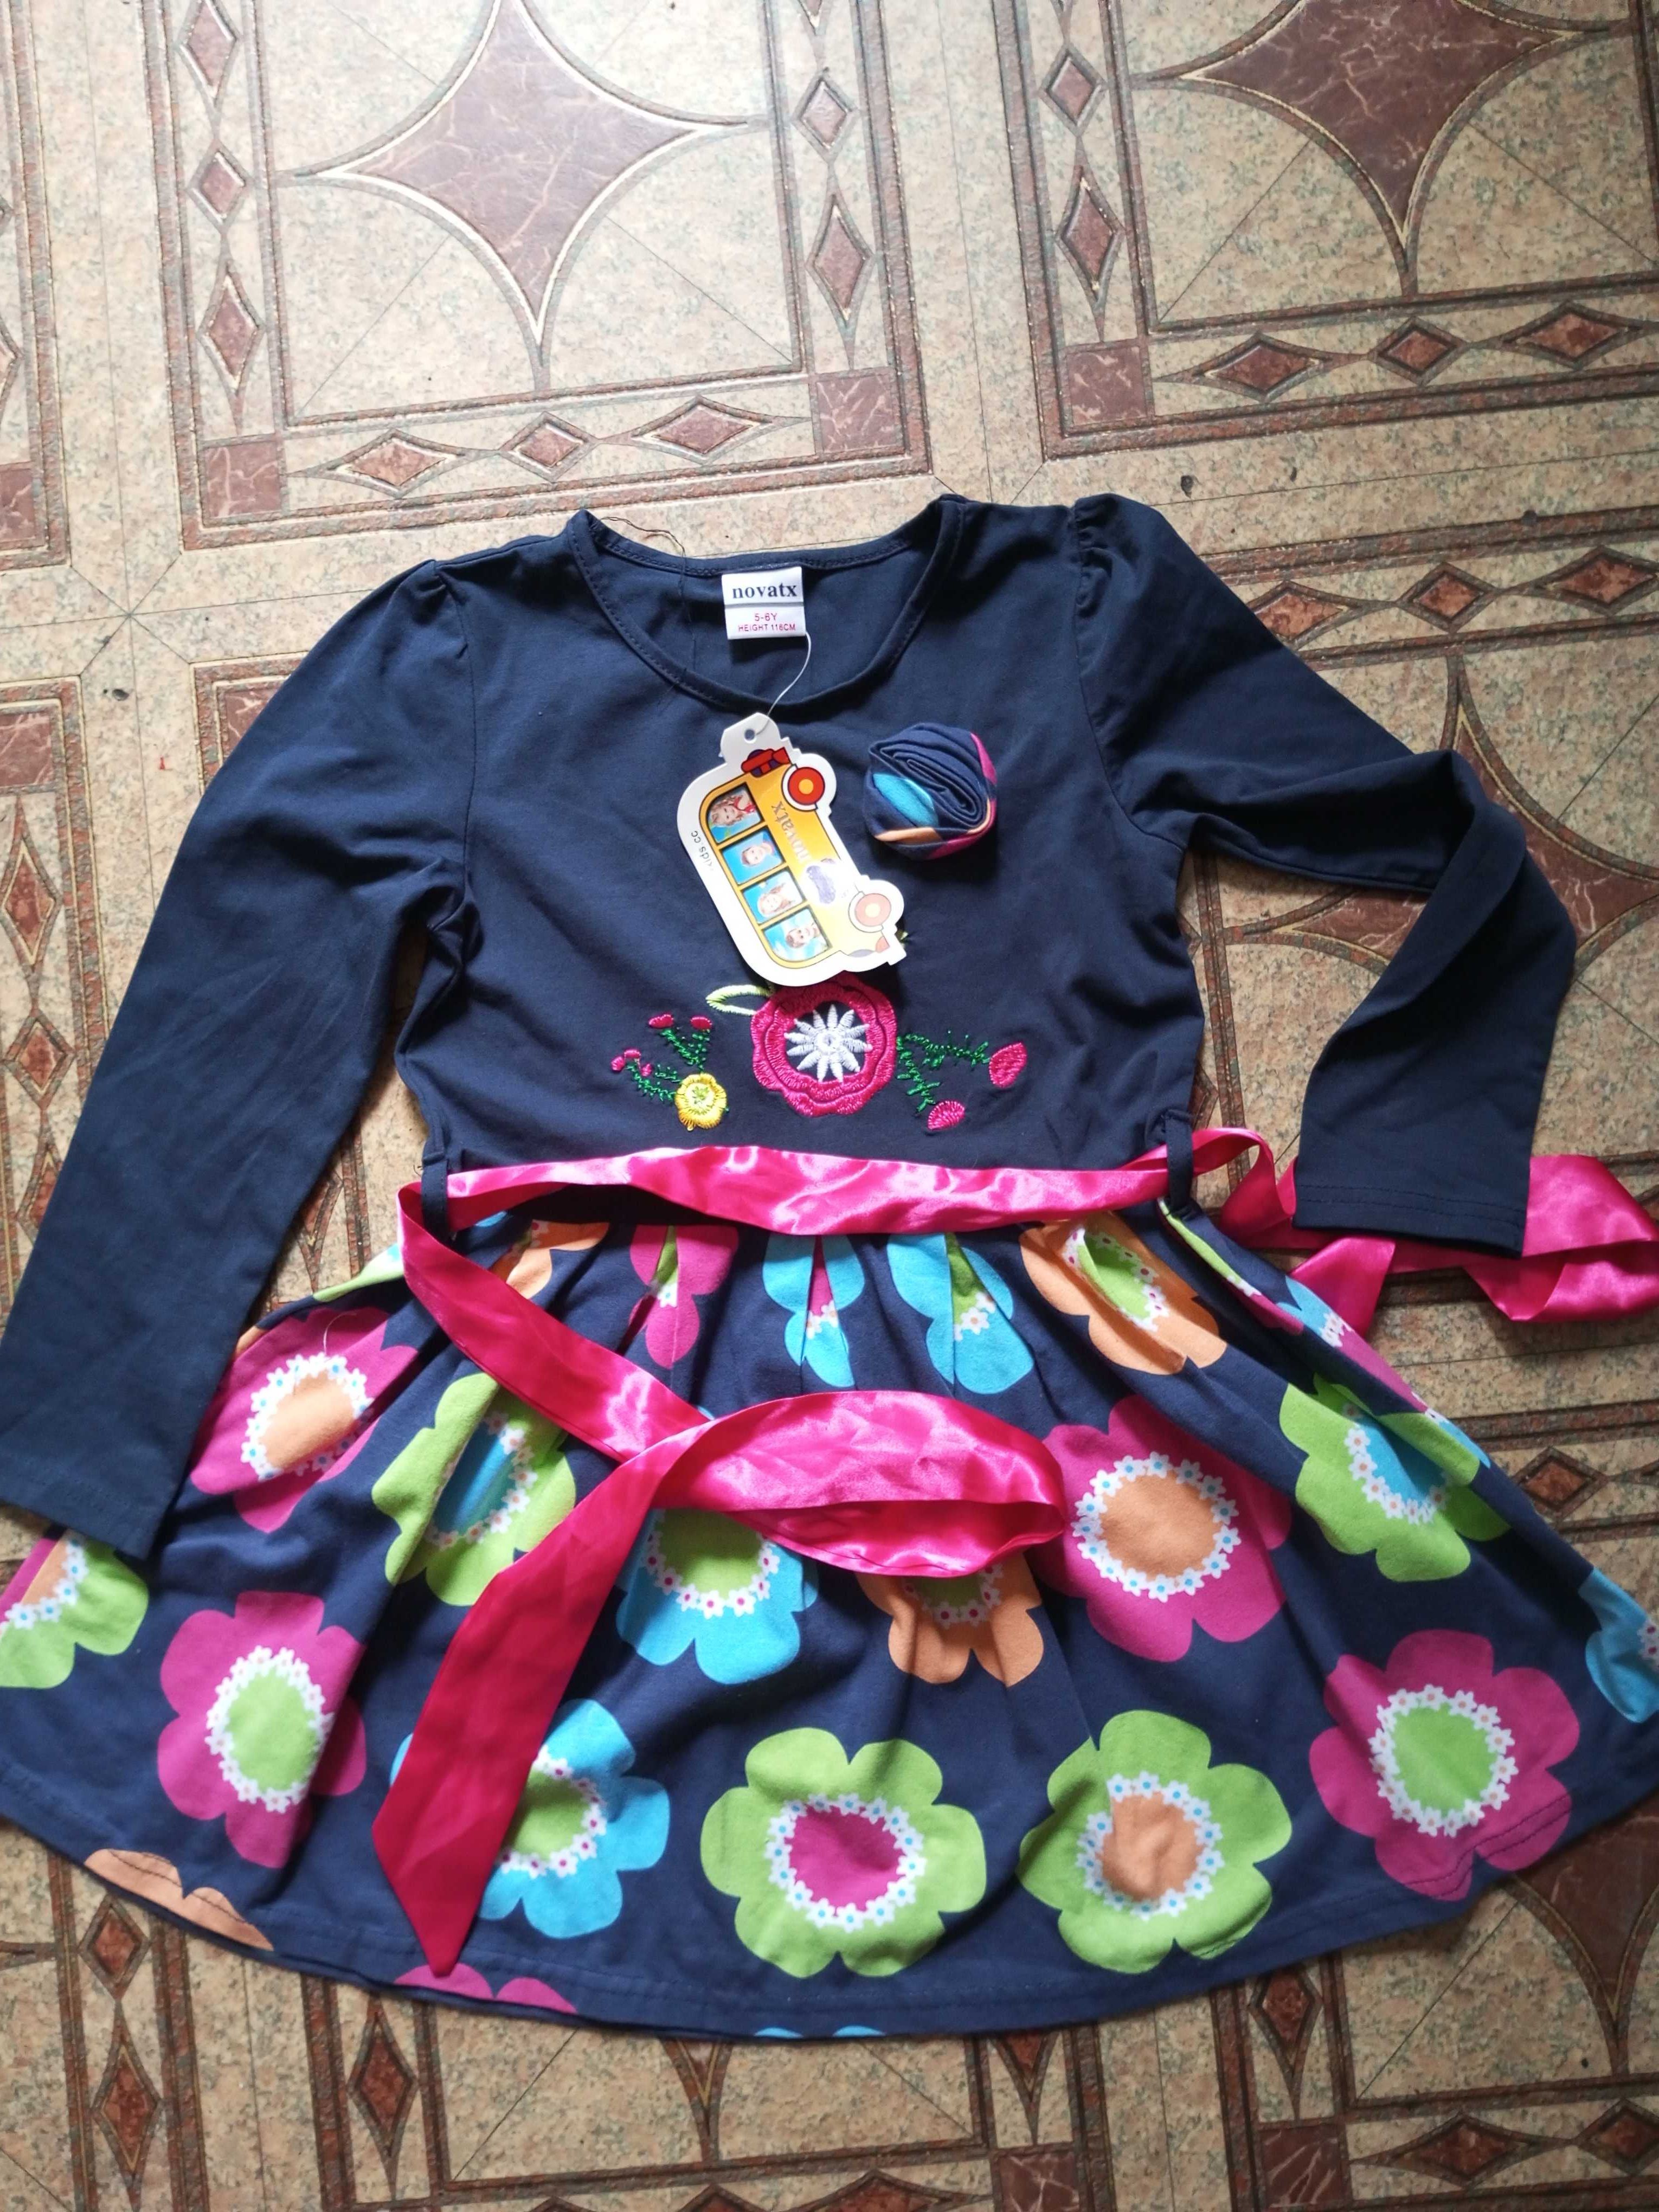 Новое брендовое платье на девочку около 4-5лет.+ носки + игра домино.